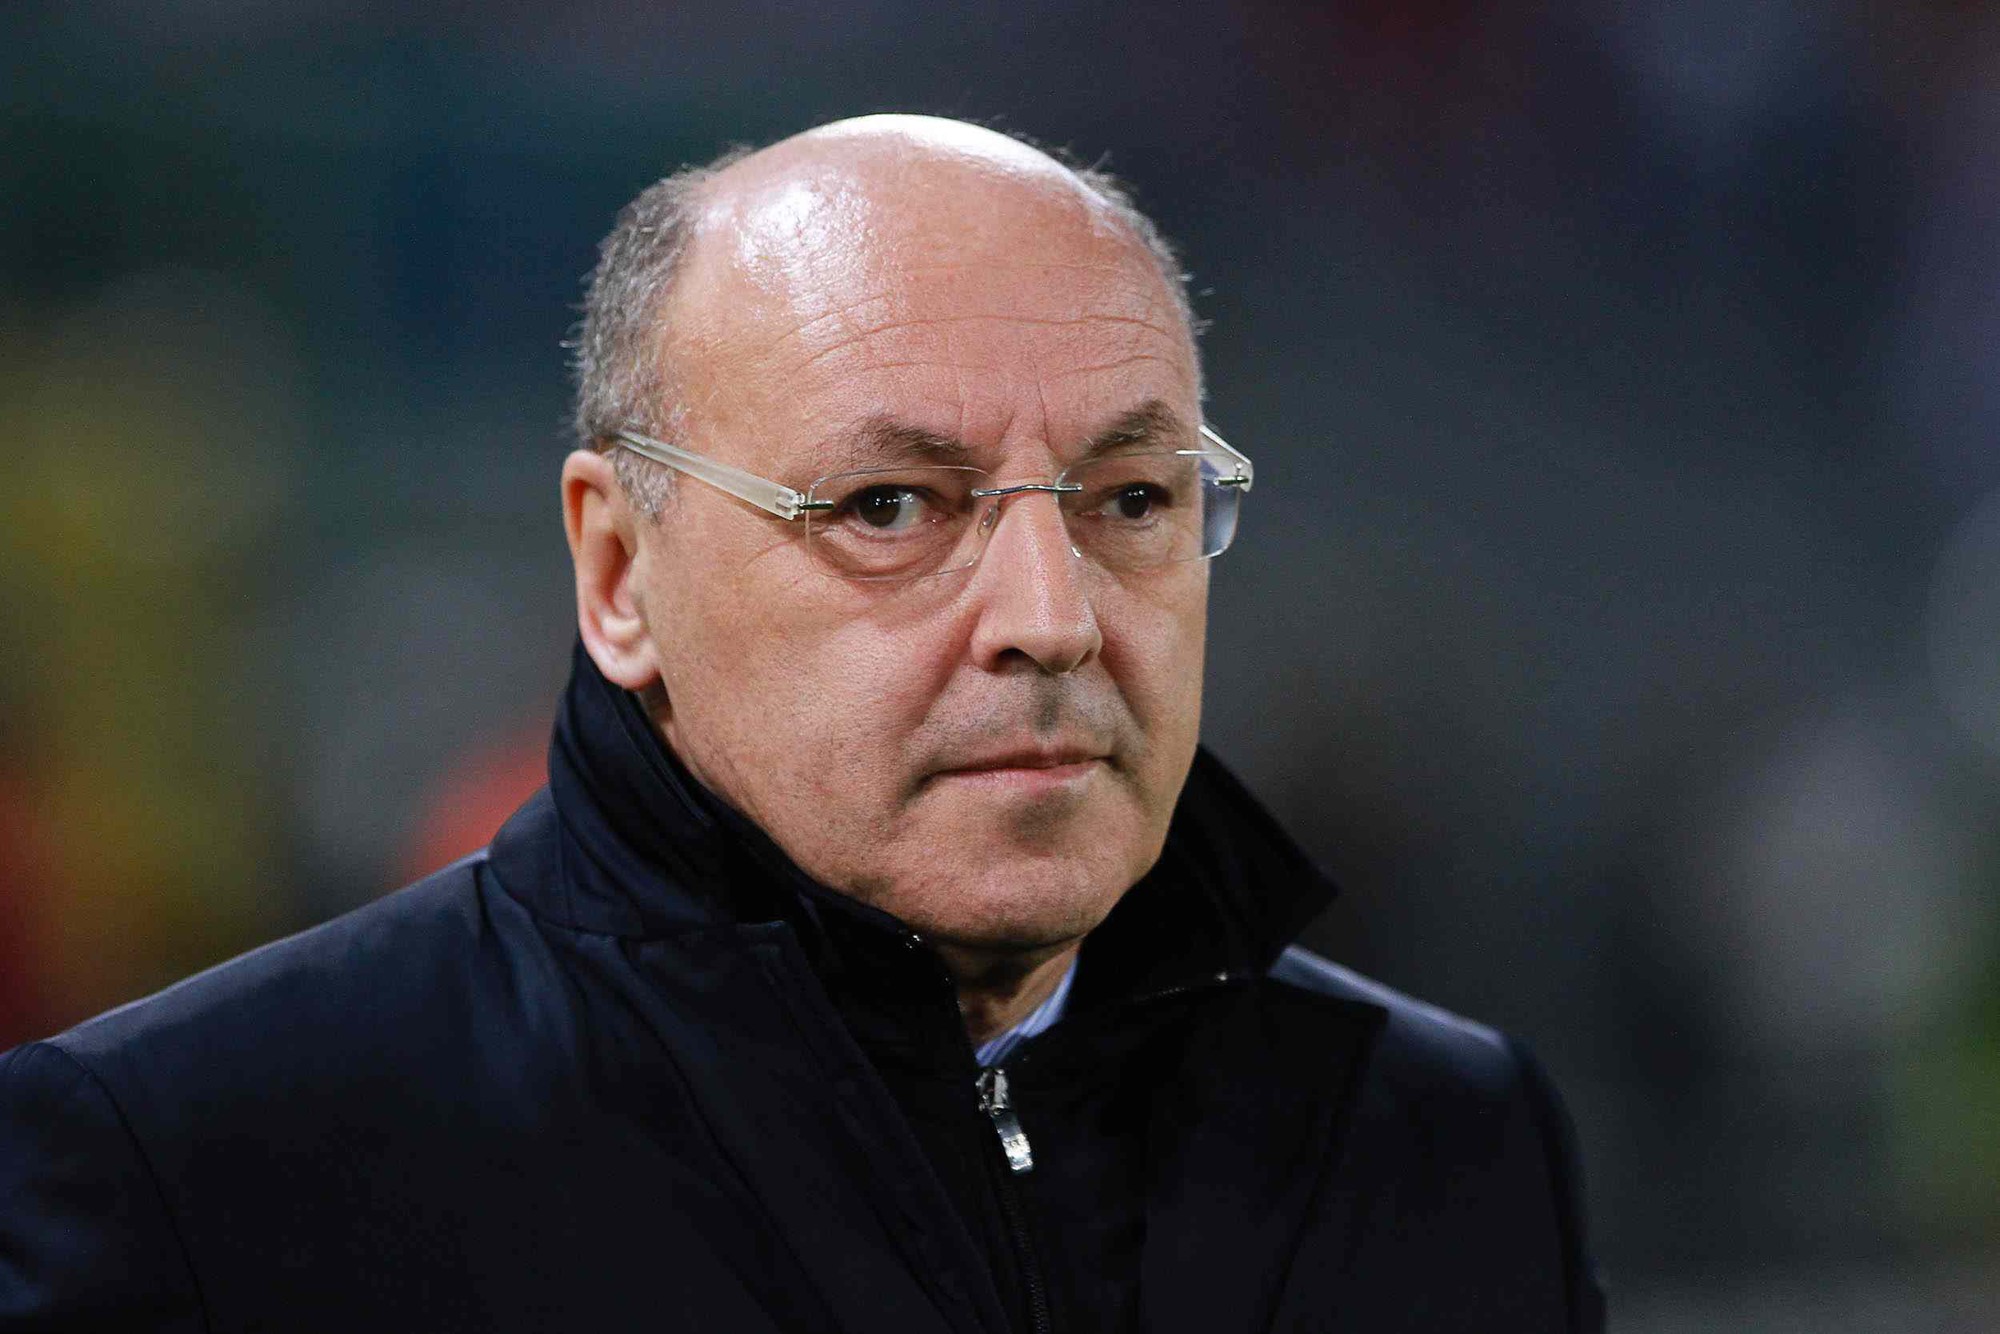 Lãnh đạo Juventus “phát điên” khi cầu thủ bị tấn công